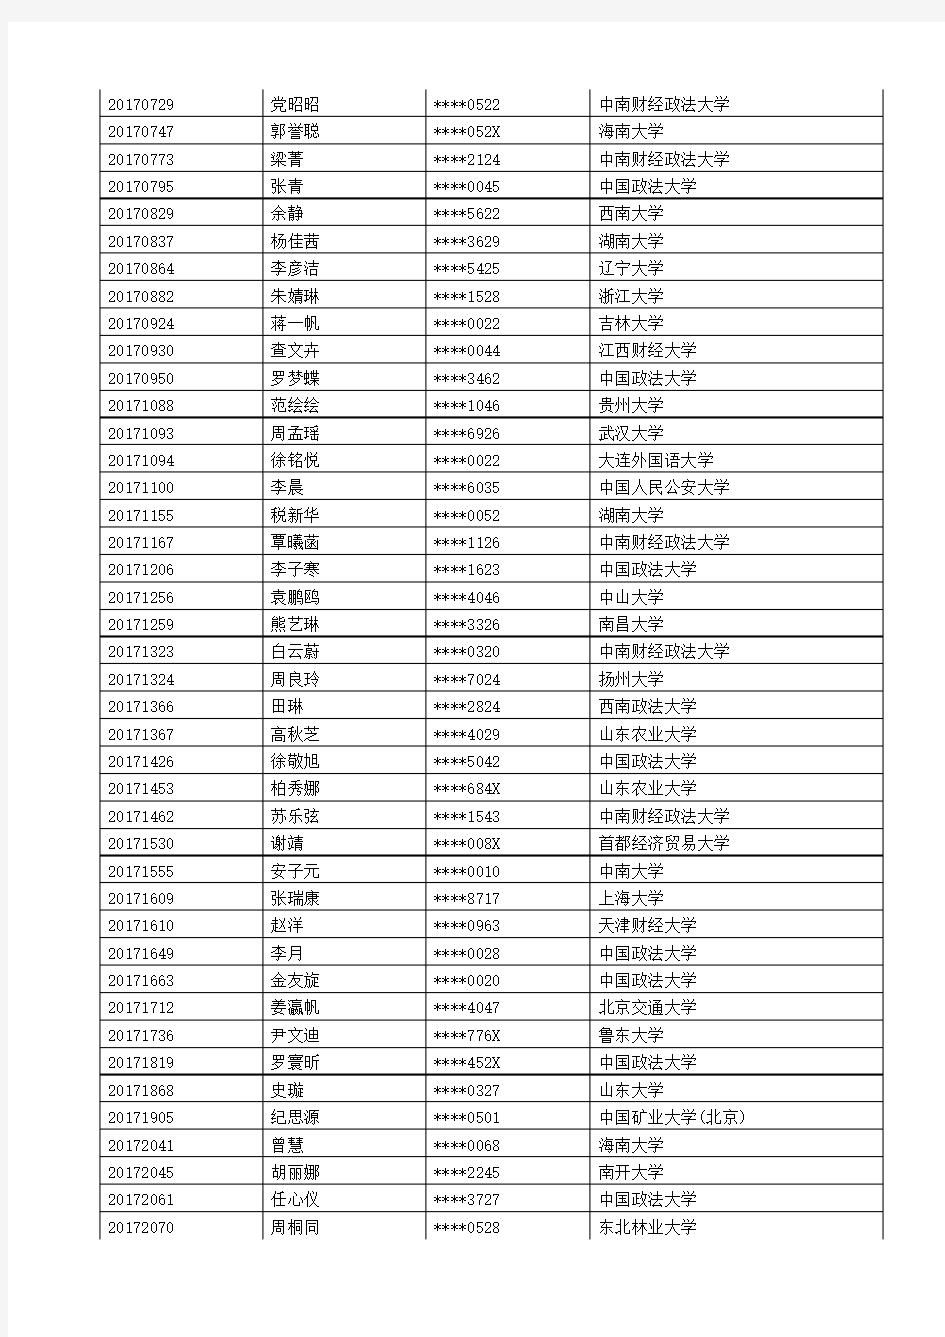 2017年中国政法大学法律硕士学院优秀大学生夏令营拟接收入营名单公示.